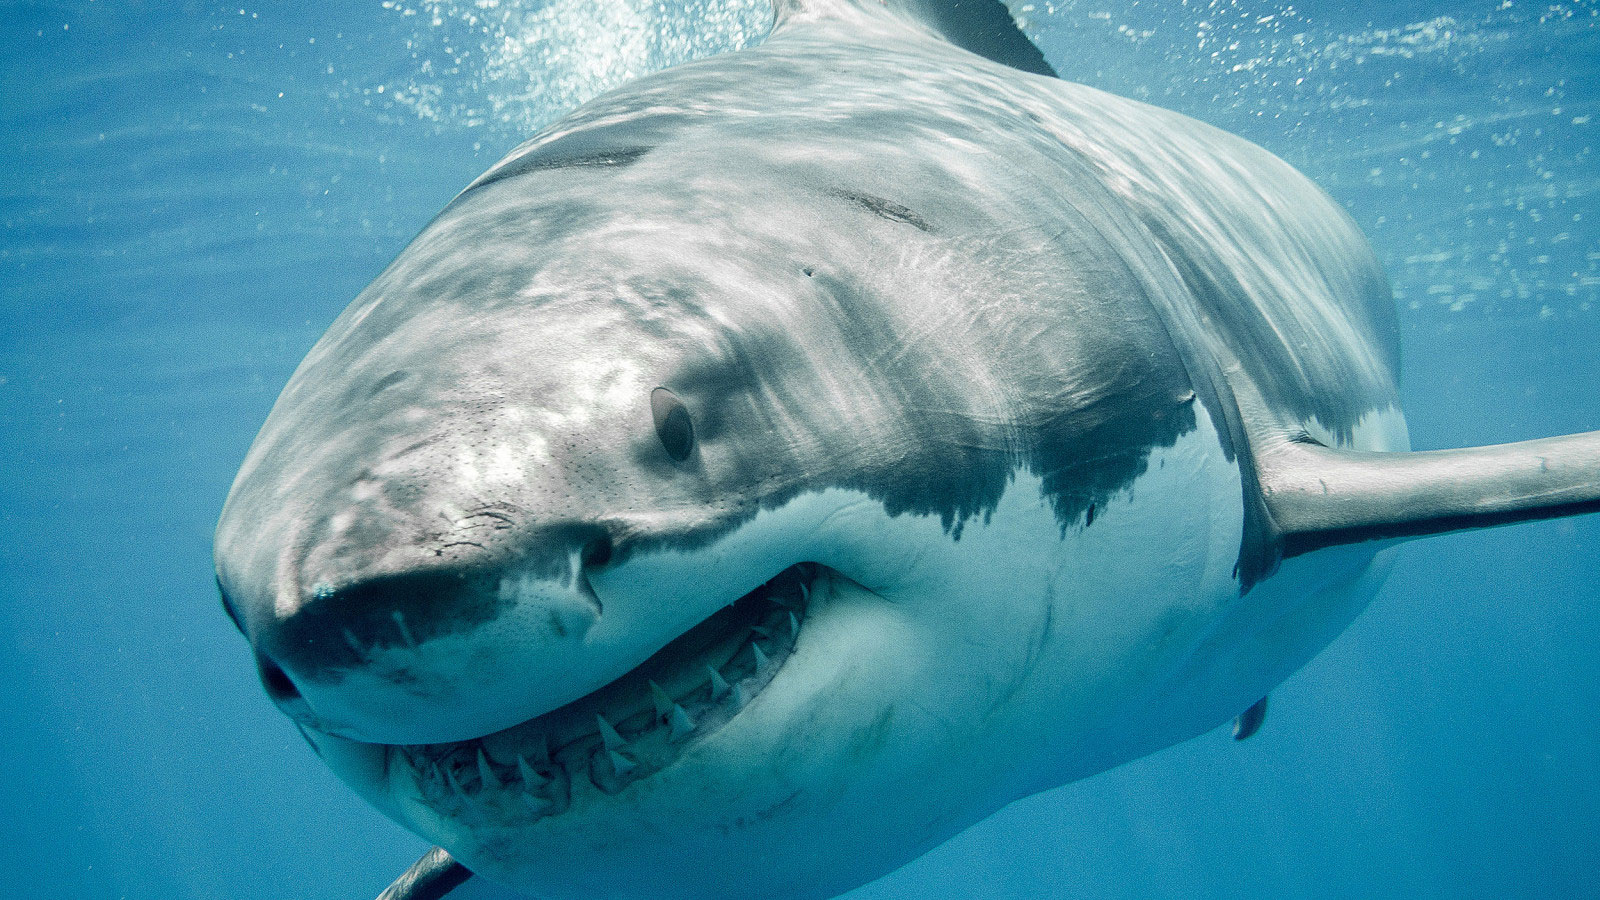 Τρομακτικό: Ήρθε πρόσωπο με πρόσωπο με καρχαρία 6 μέτρων – Πως σώθηκε; (βίντεο)